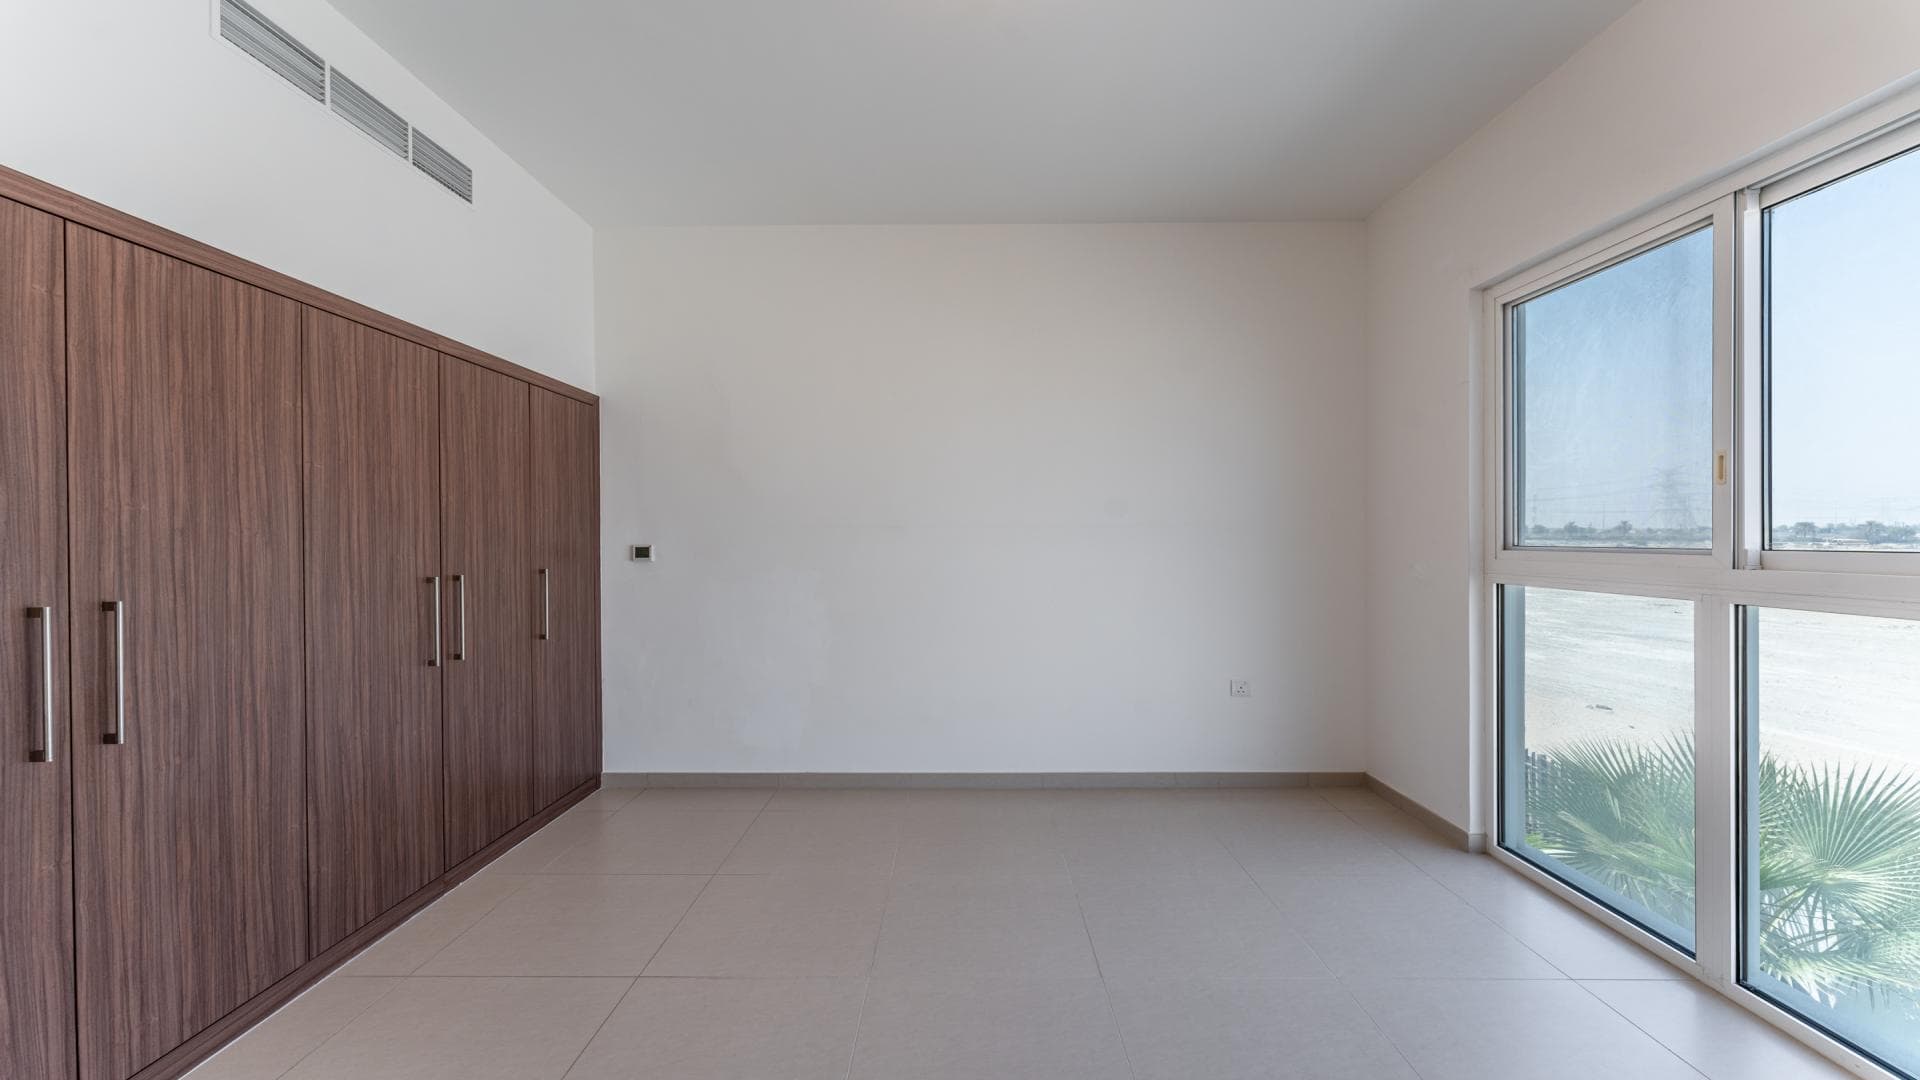 5 Bedroom Villa For Rent Al Kazim Tower 1 Lp17029 23513e9a74235000.jpg